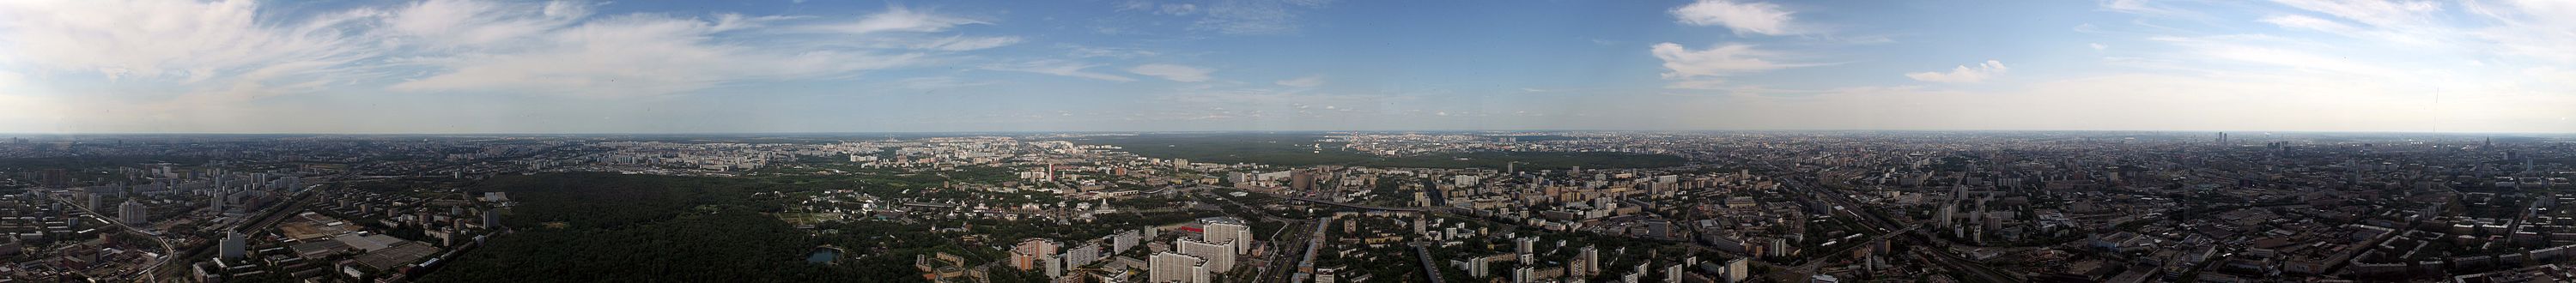 Горизонтальная панорама Москвы со смотровой площадки Останкинской телебашни